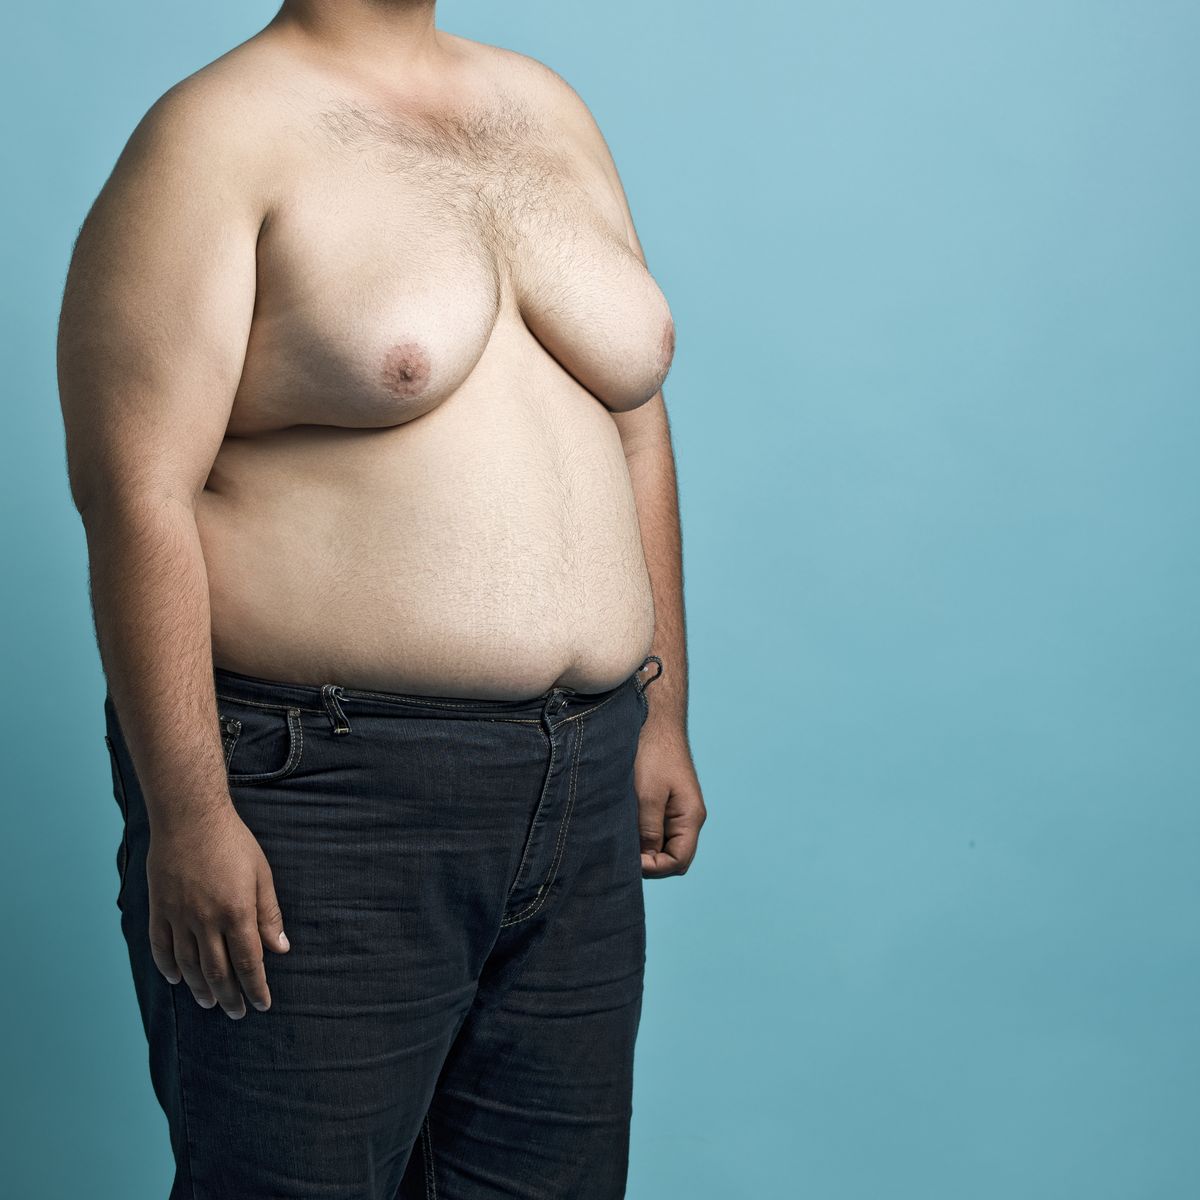 длинная грудь у мужчин фото 69